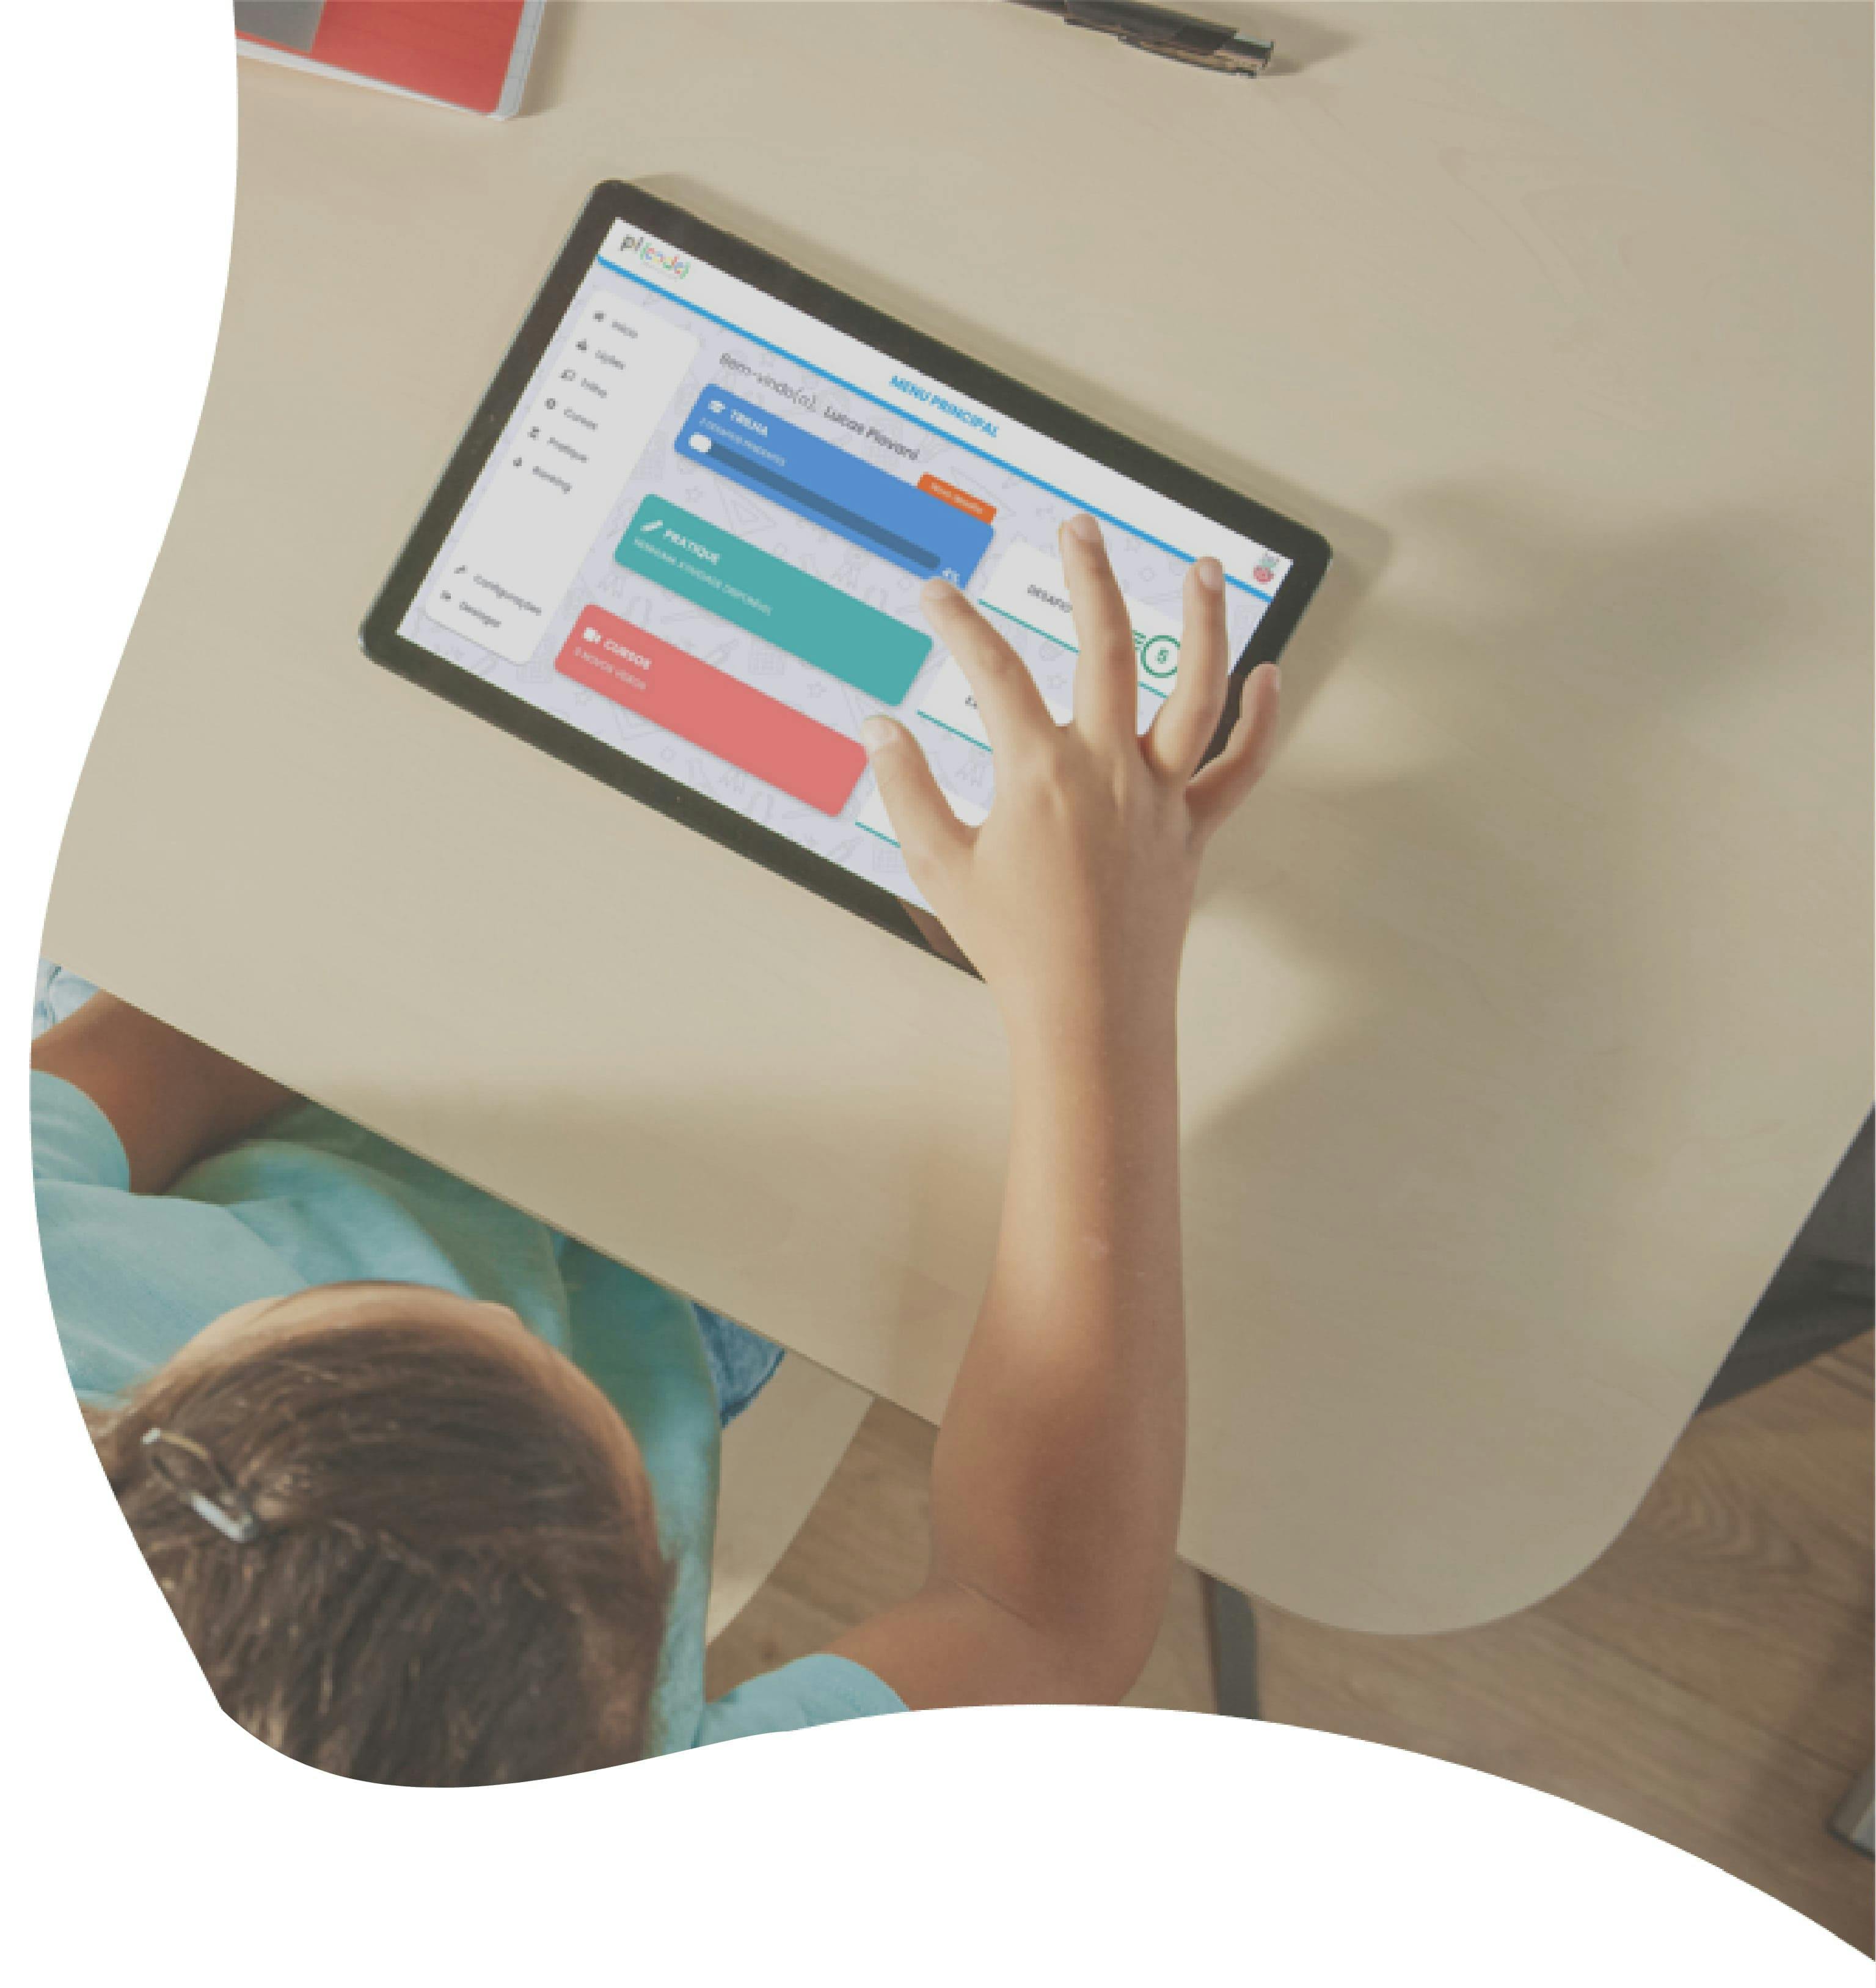 Background Picode Education - Criança utilizando a plataforma em um Tablet